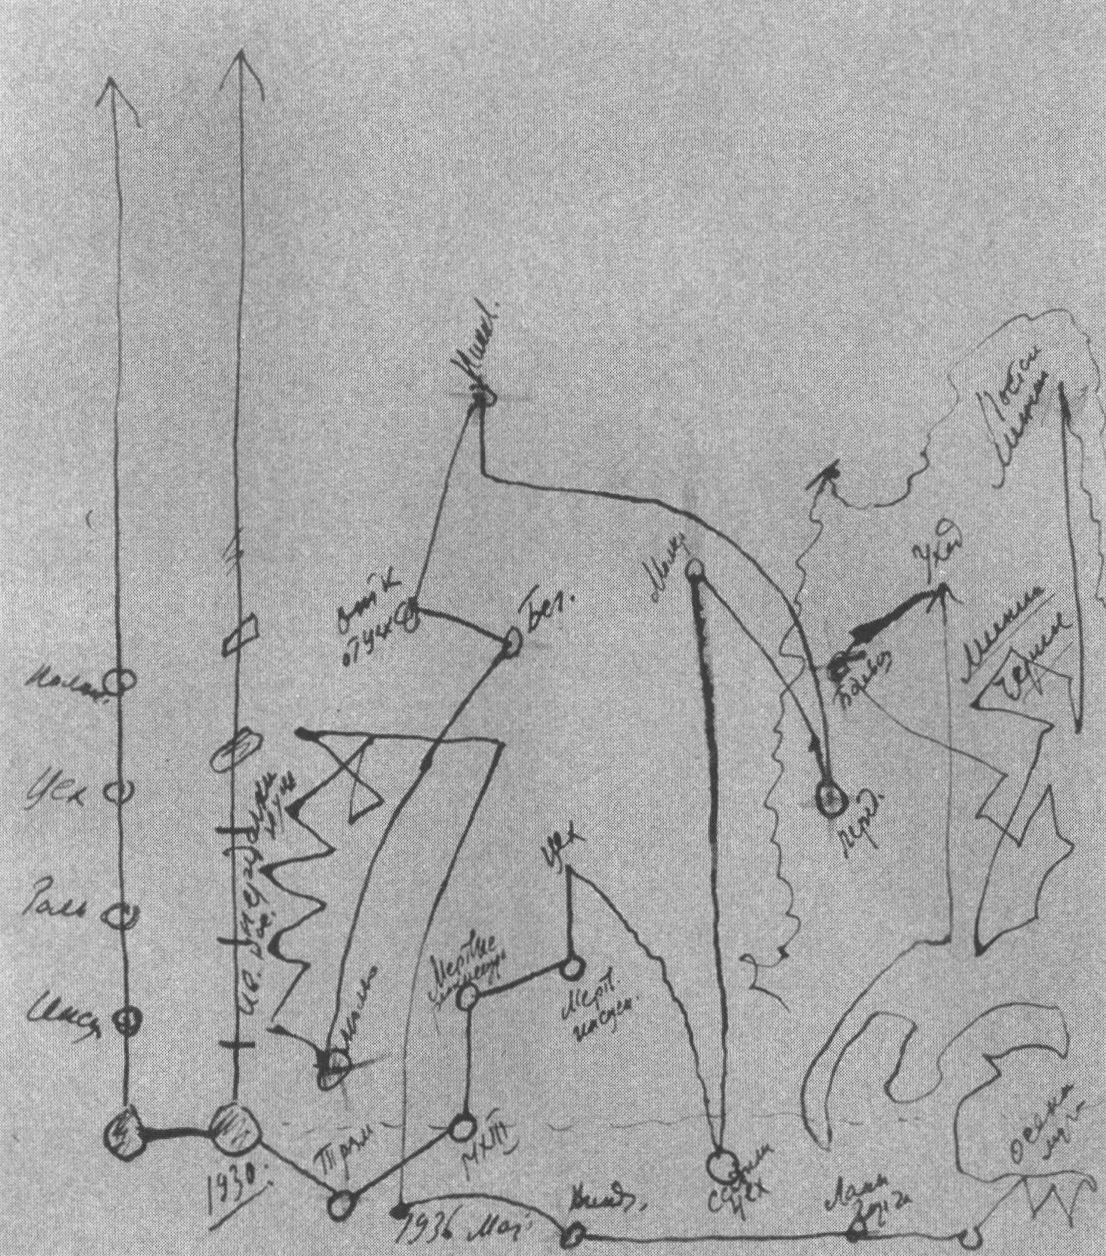 Рисунок хода творческой жизни, сделанный М.А. Булгаковым. 1937 г. Публикуется впервые